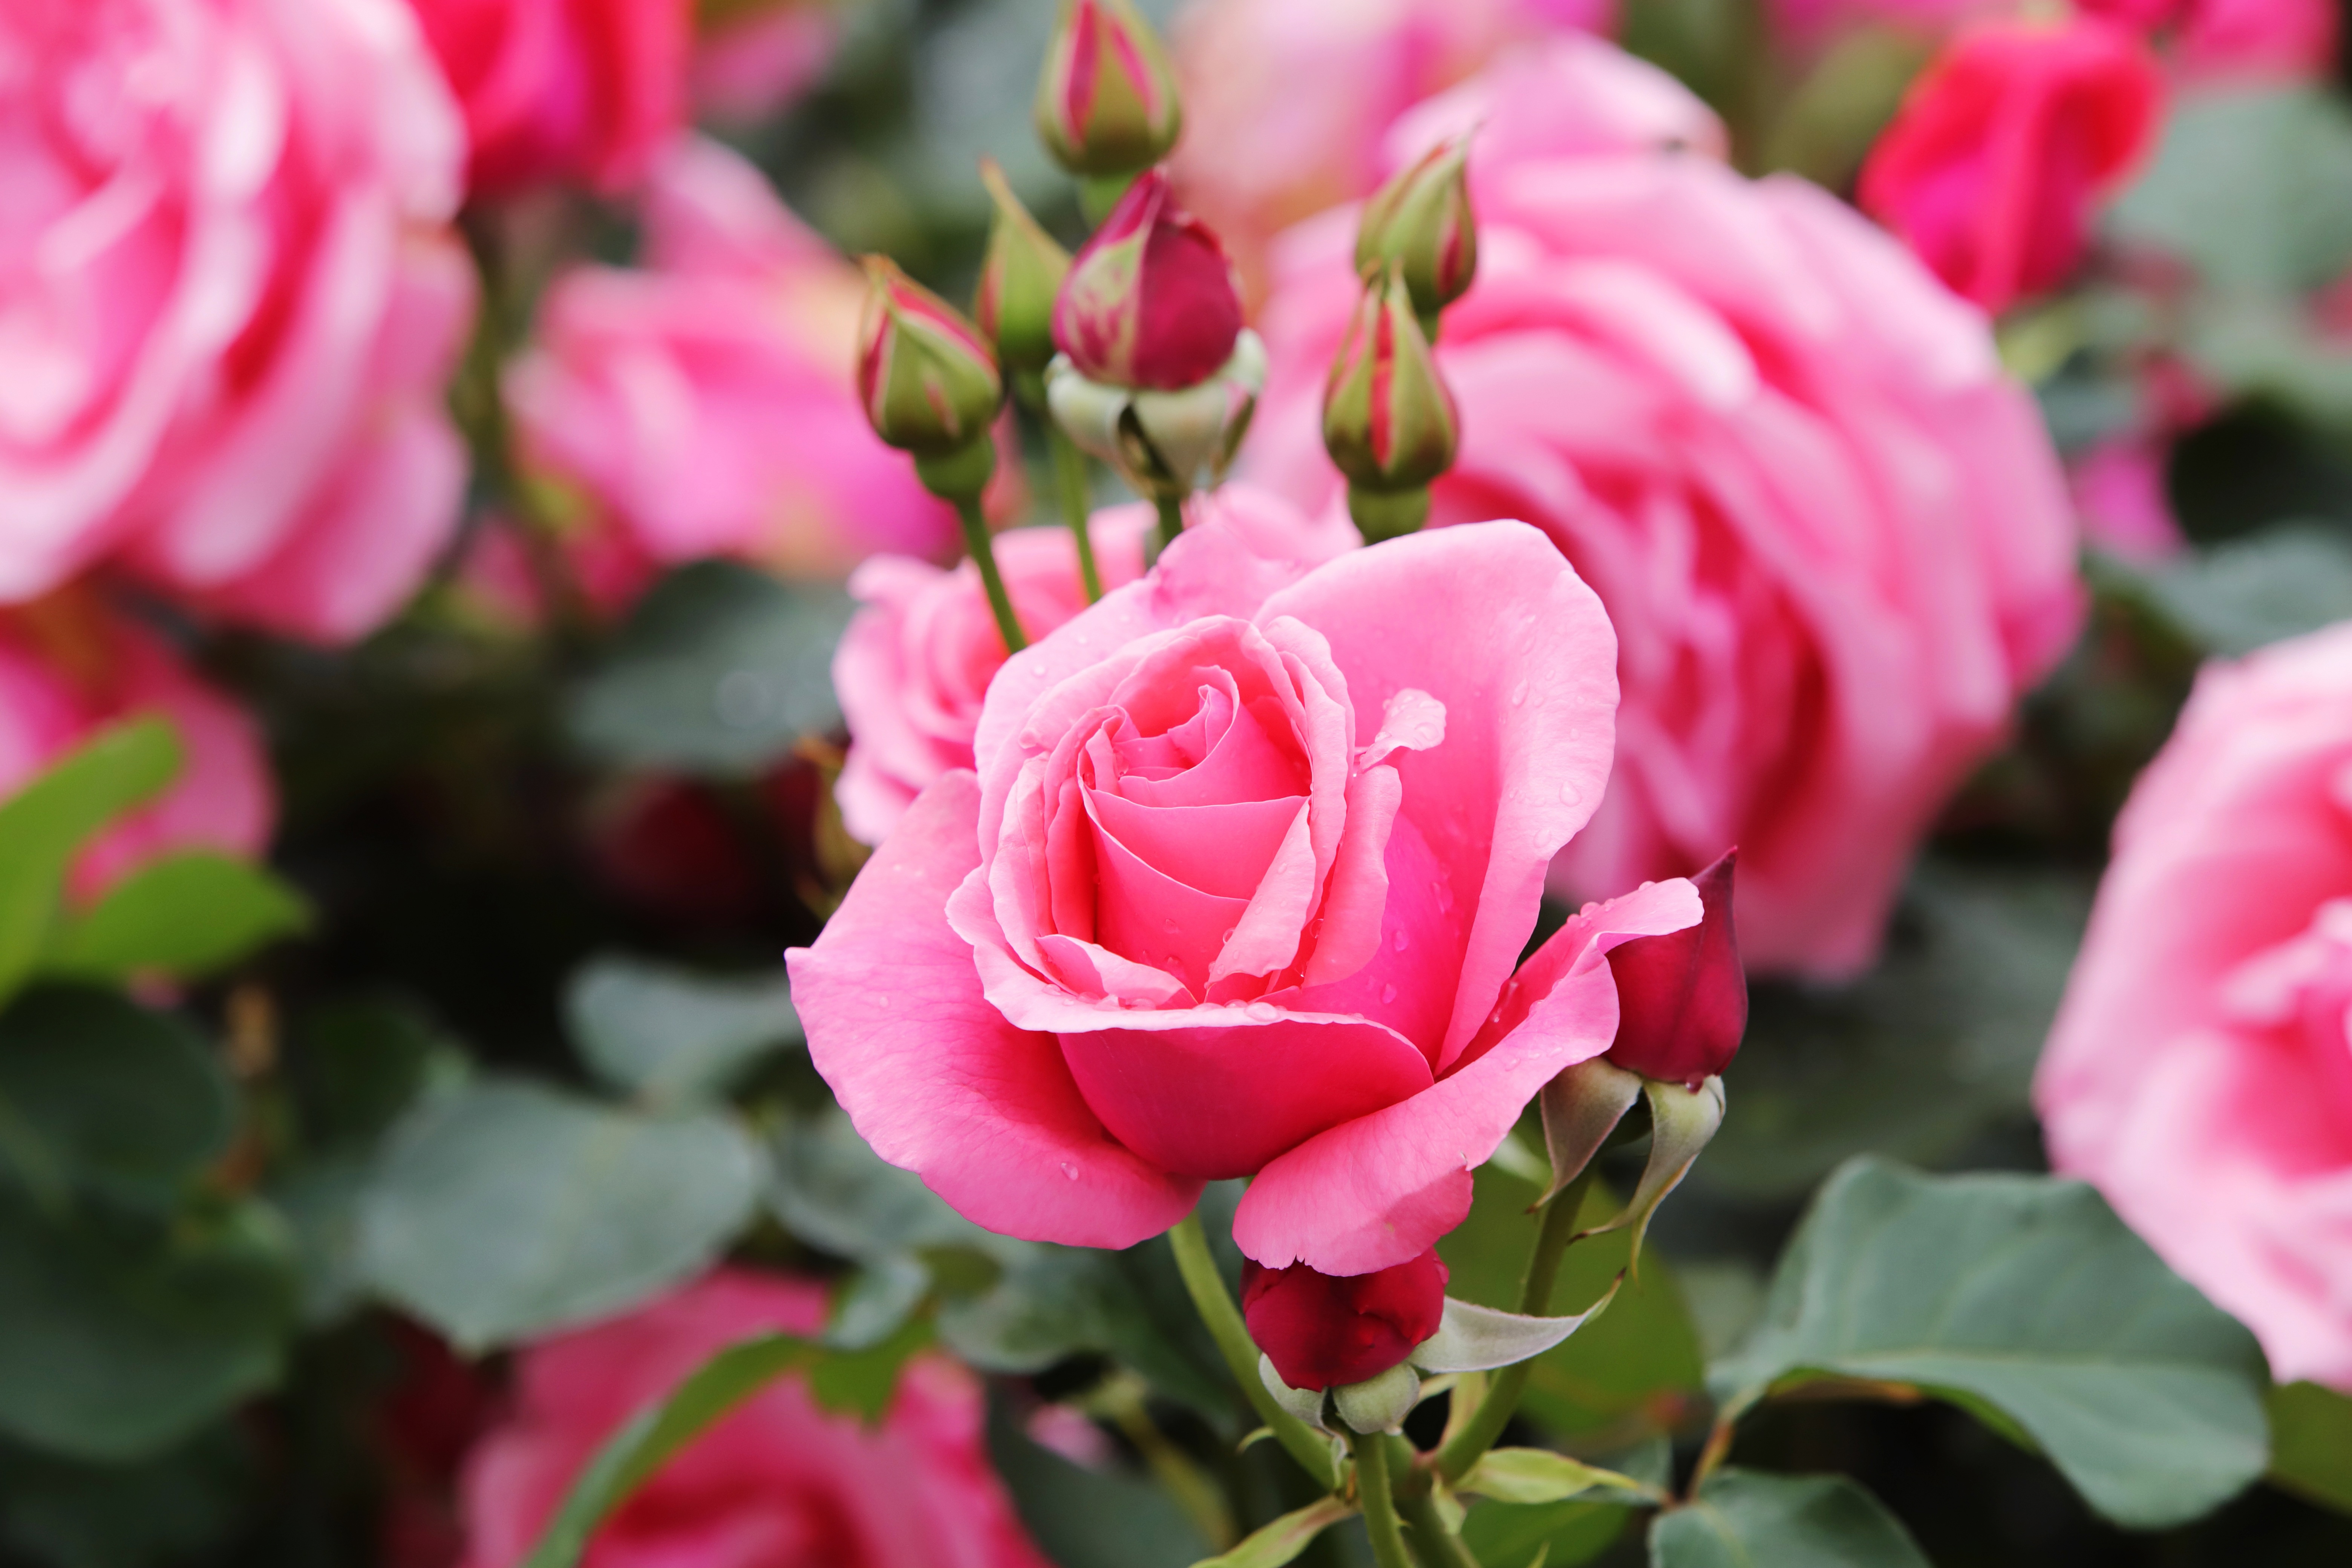 Скачать обои бесплатно Роза, Бутон, Лепесток, Земля/природа, Розовый Цветок, Розовая Роза картинка на рабочий стол ПК